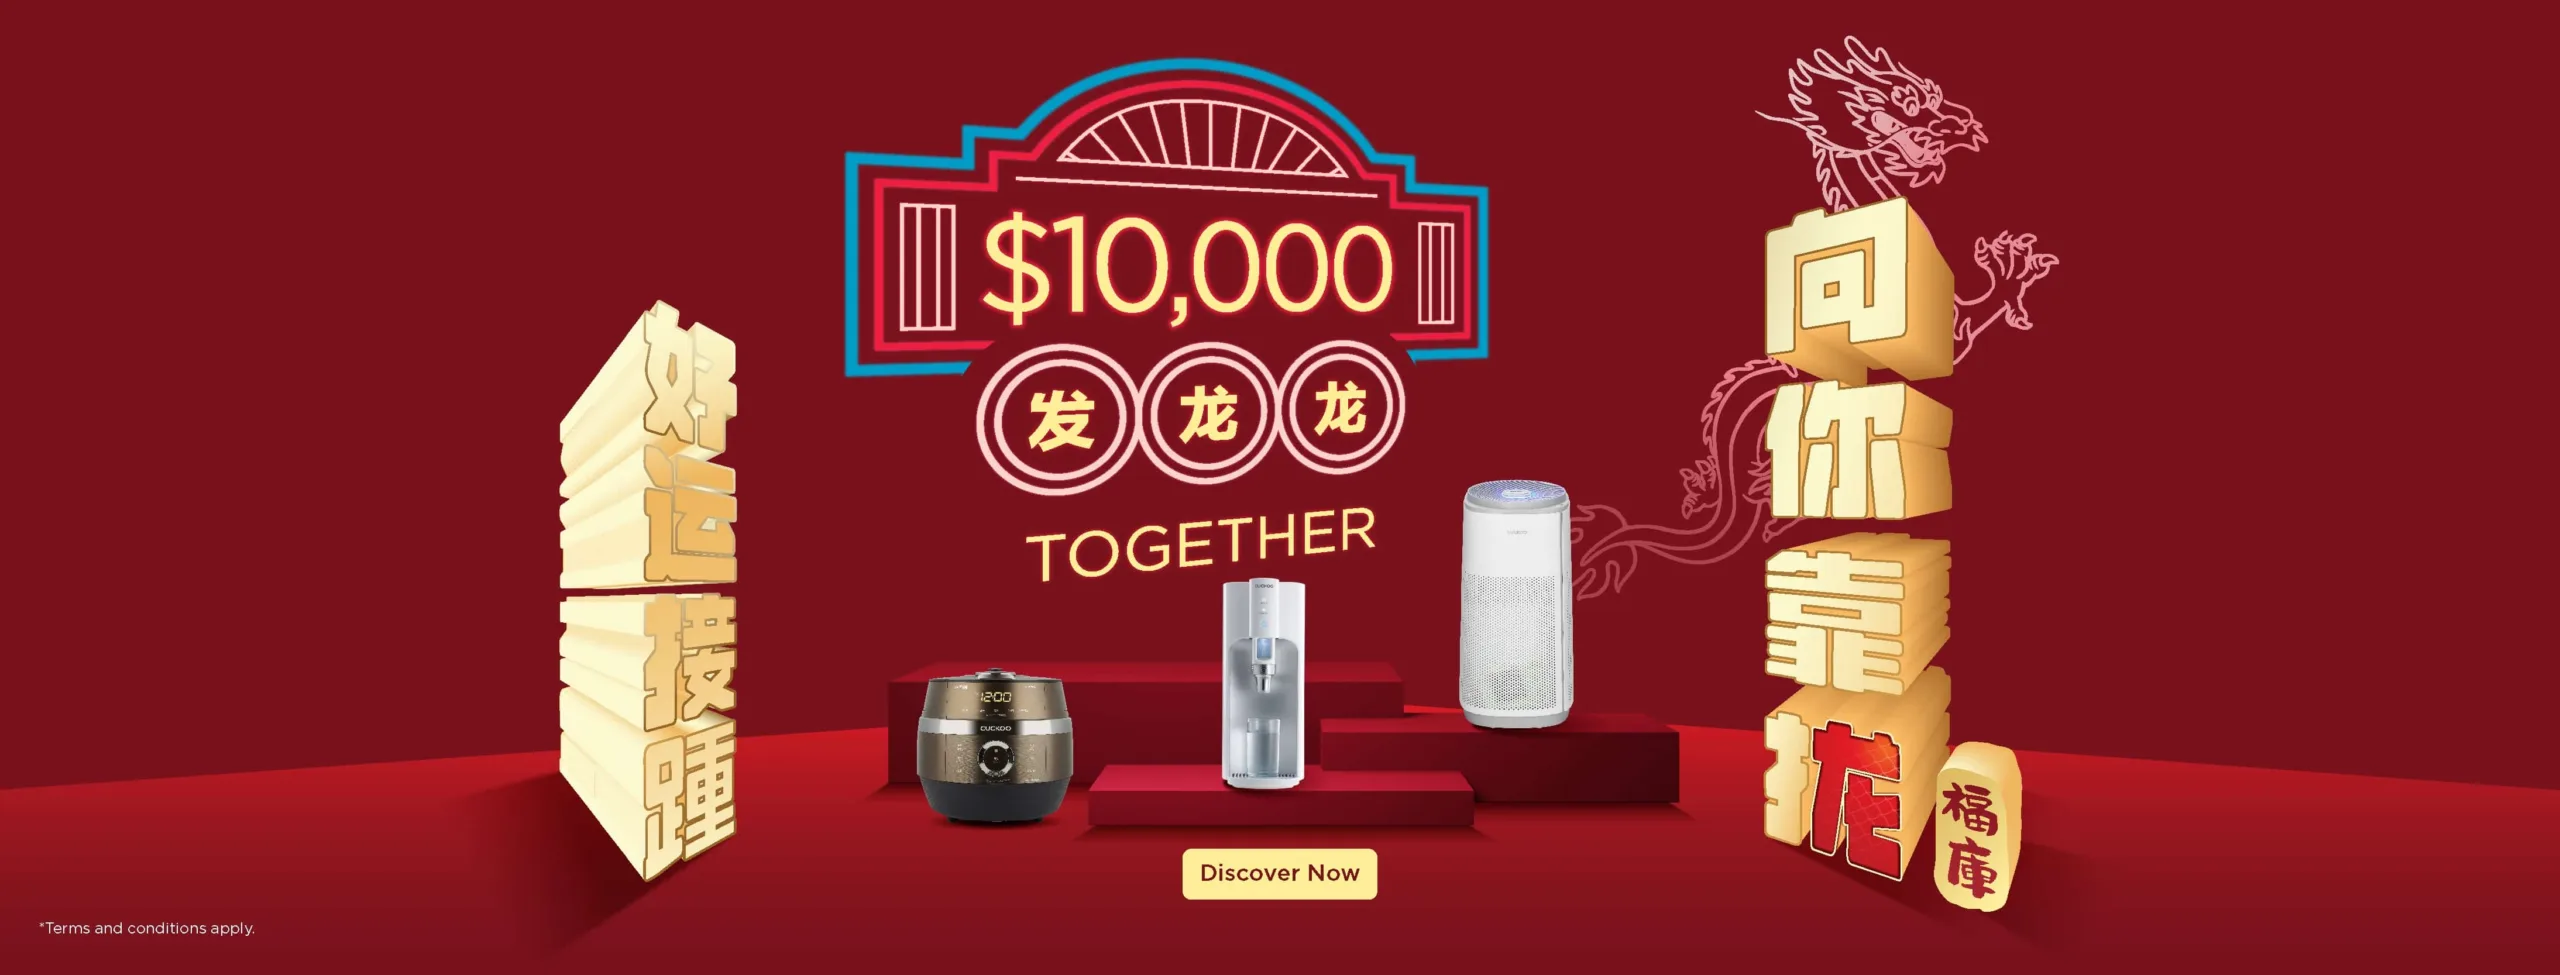 $10,000 Together, Ah Huat